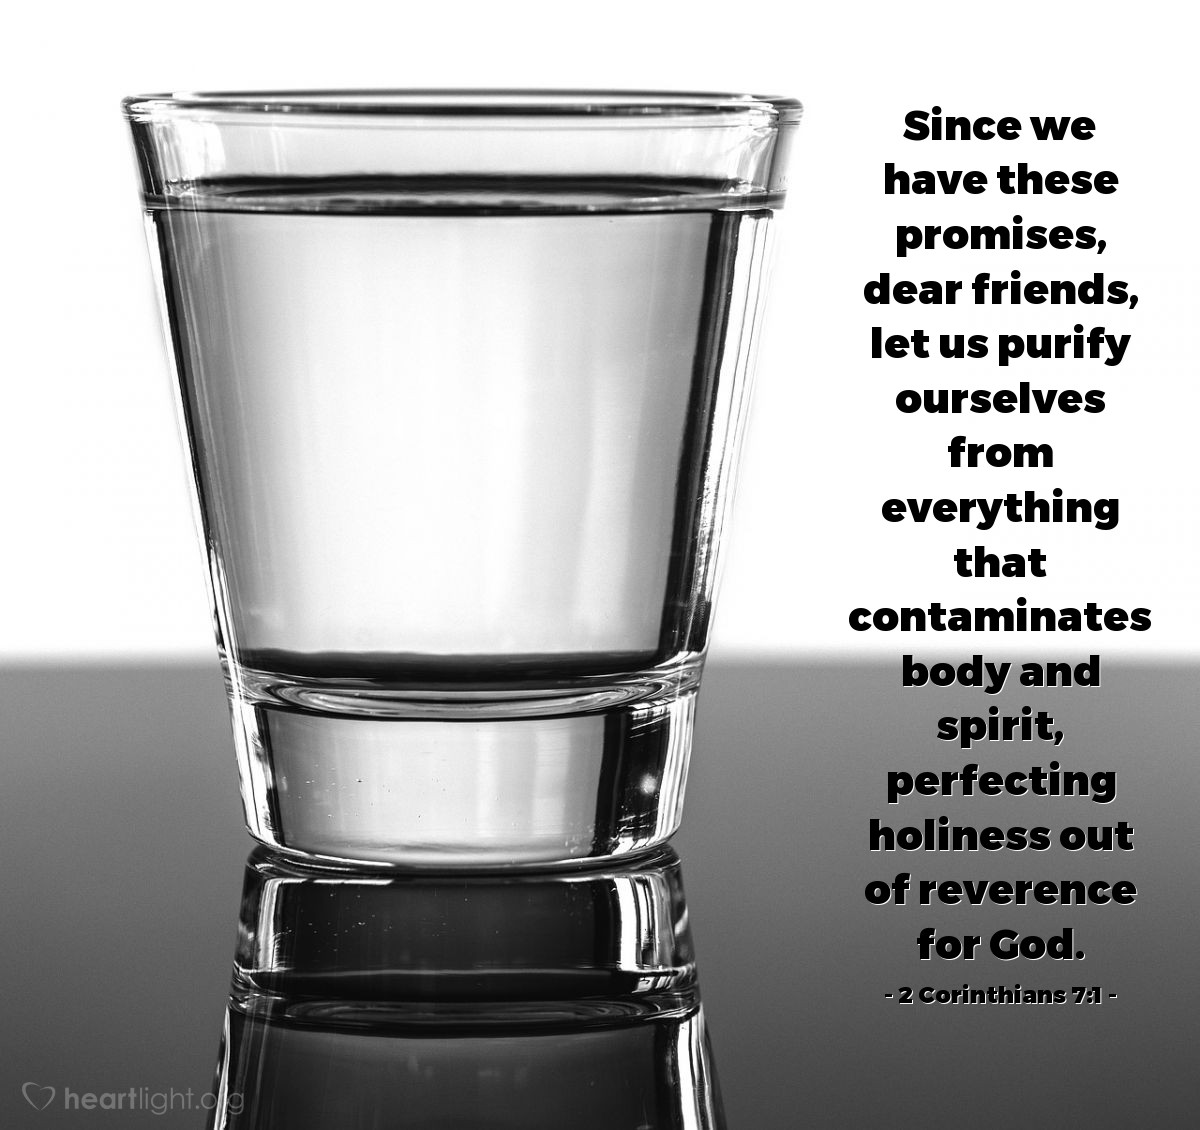 2a. de Corintios 7:1 | Por tanto, amados, teniendo estas promesas, limpiémonos de toda inmundicia de la carne y del espíritu, perfeccionando la santidad en el temor de Dios.